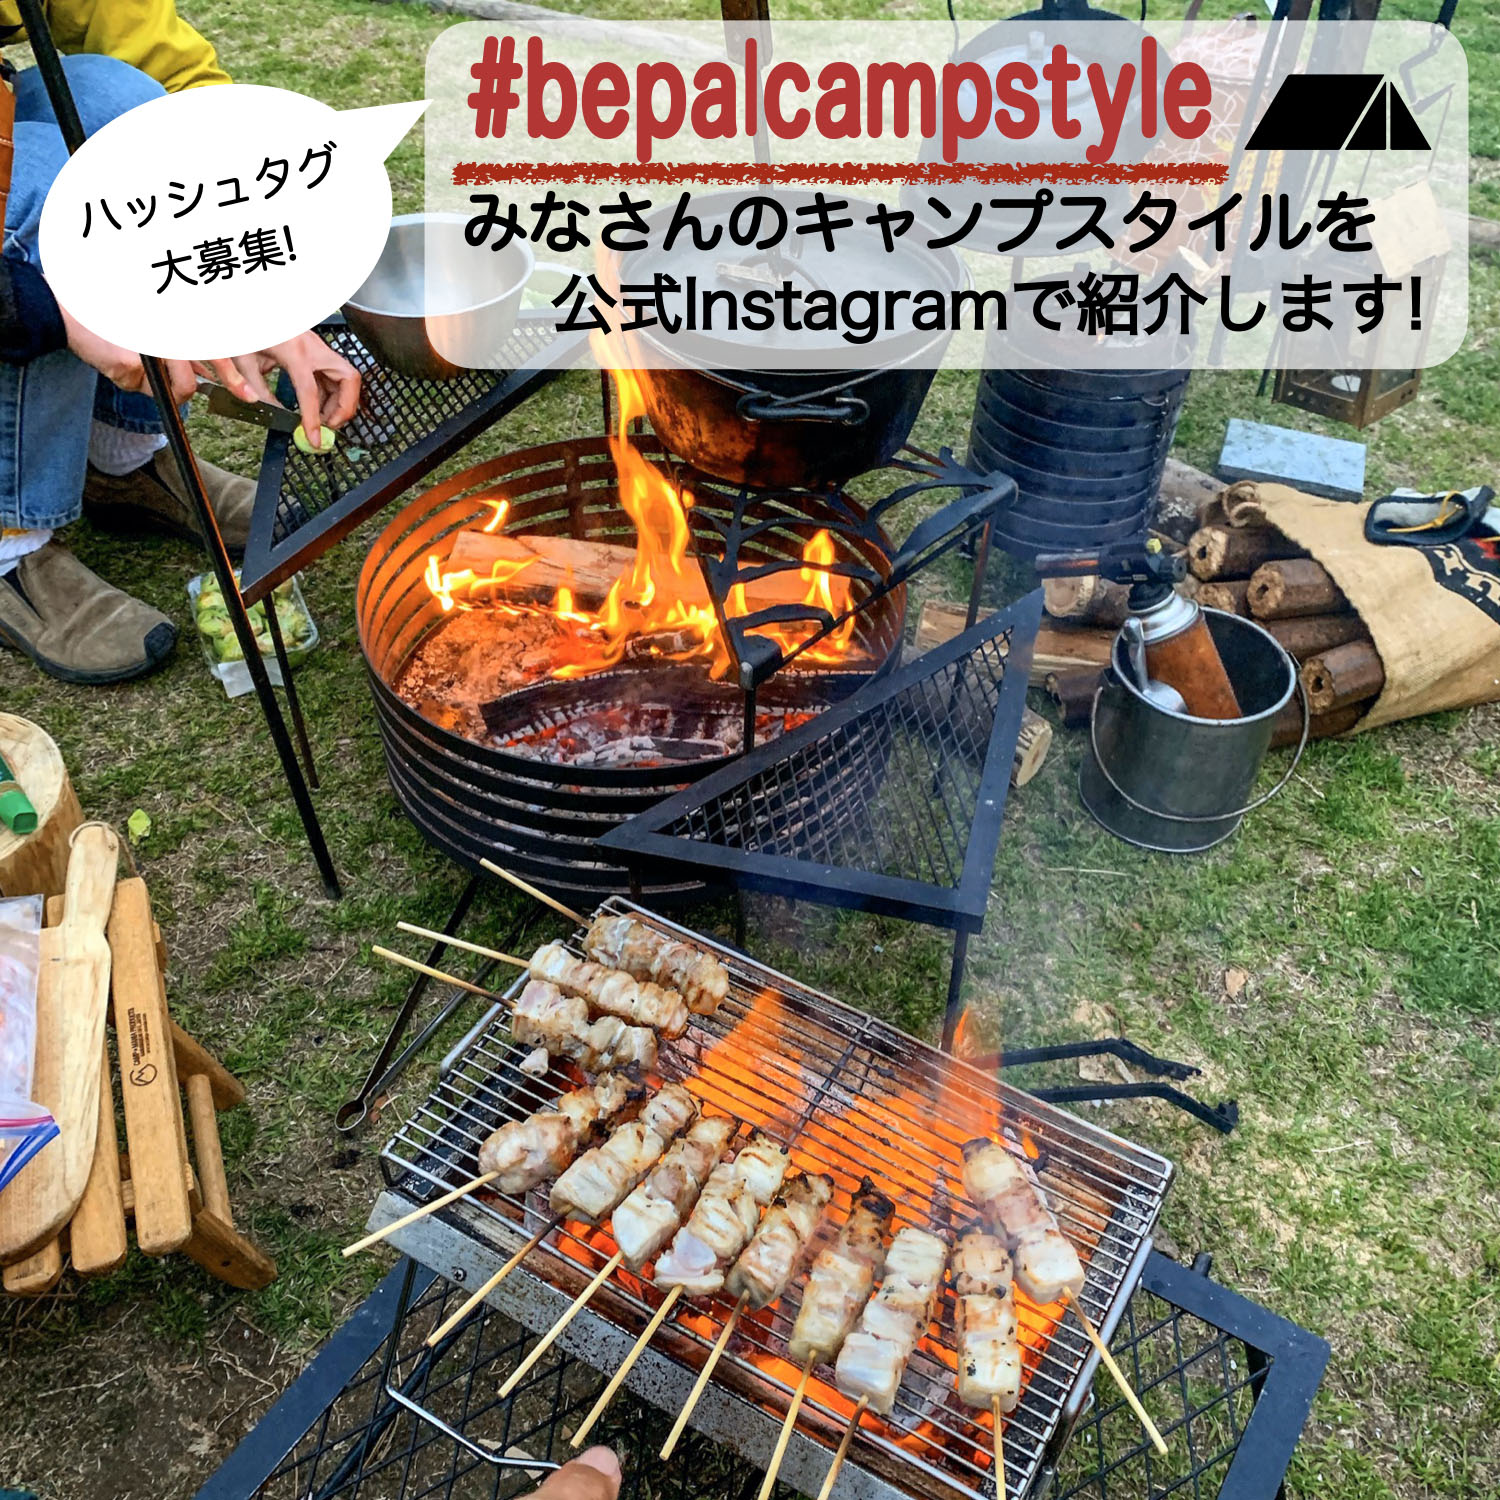 これは試してみたい！「#bepalcampstyle」で見つけた、シズル感満点のキャンプ料理７選 | 料理・レシピ 【BE-PAL】キャンプ 、アウトドア、自然派生活の情報源ビーパル